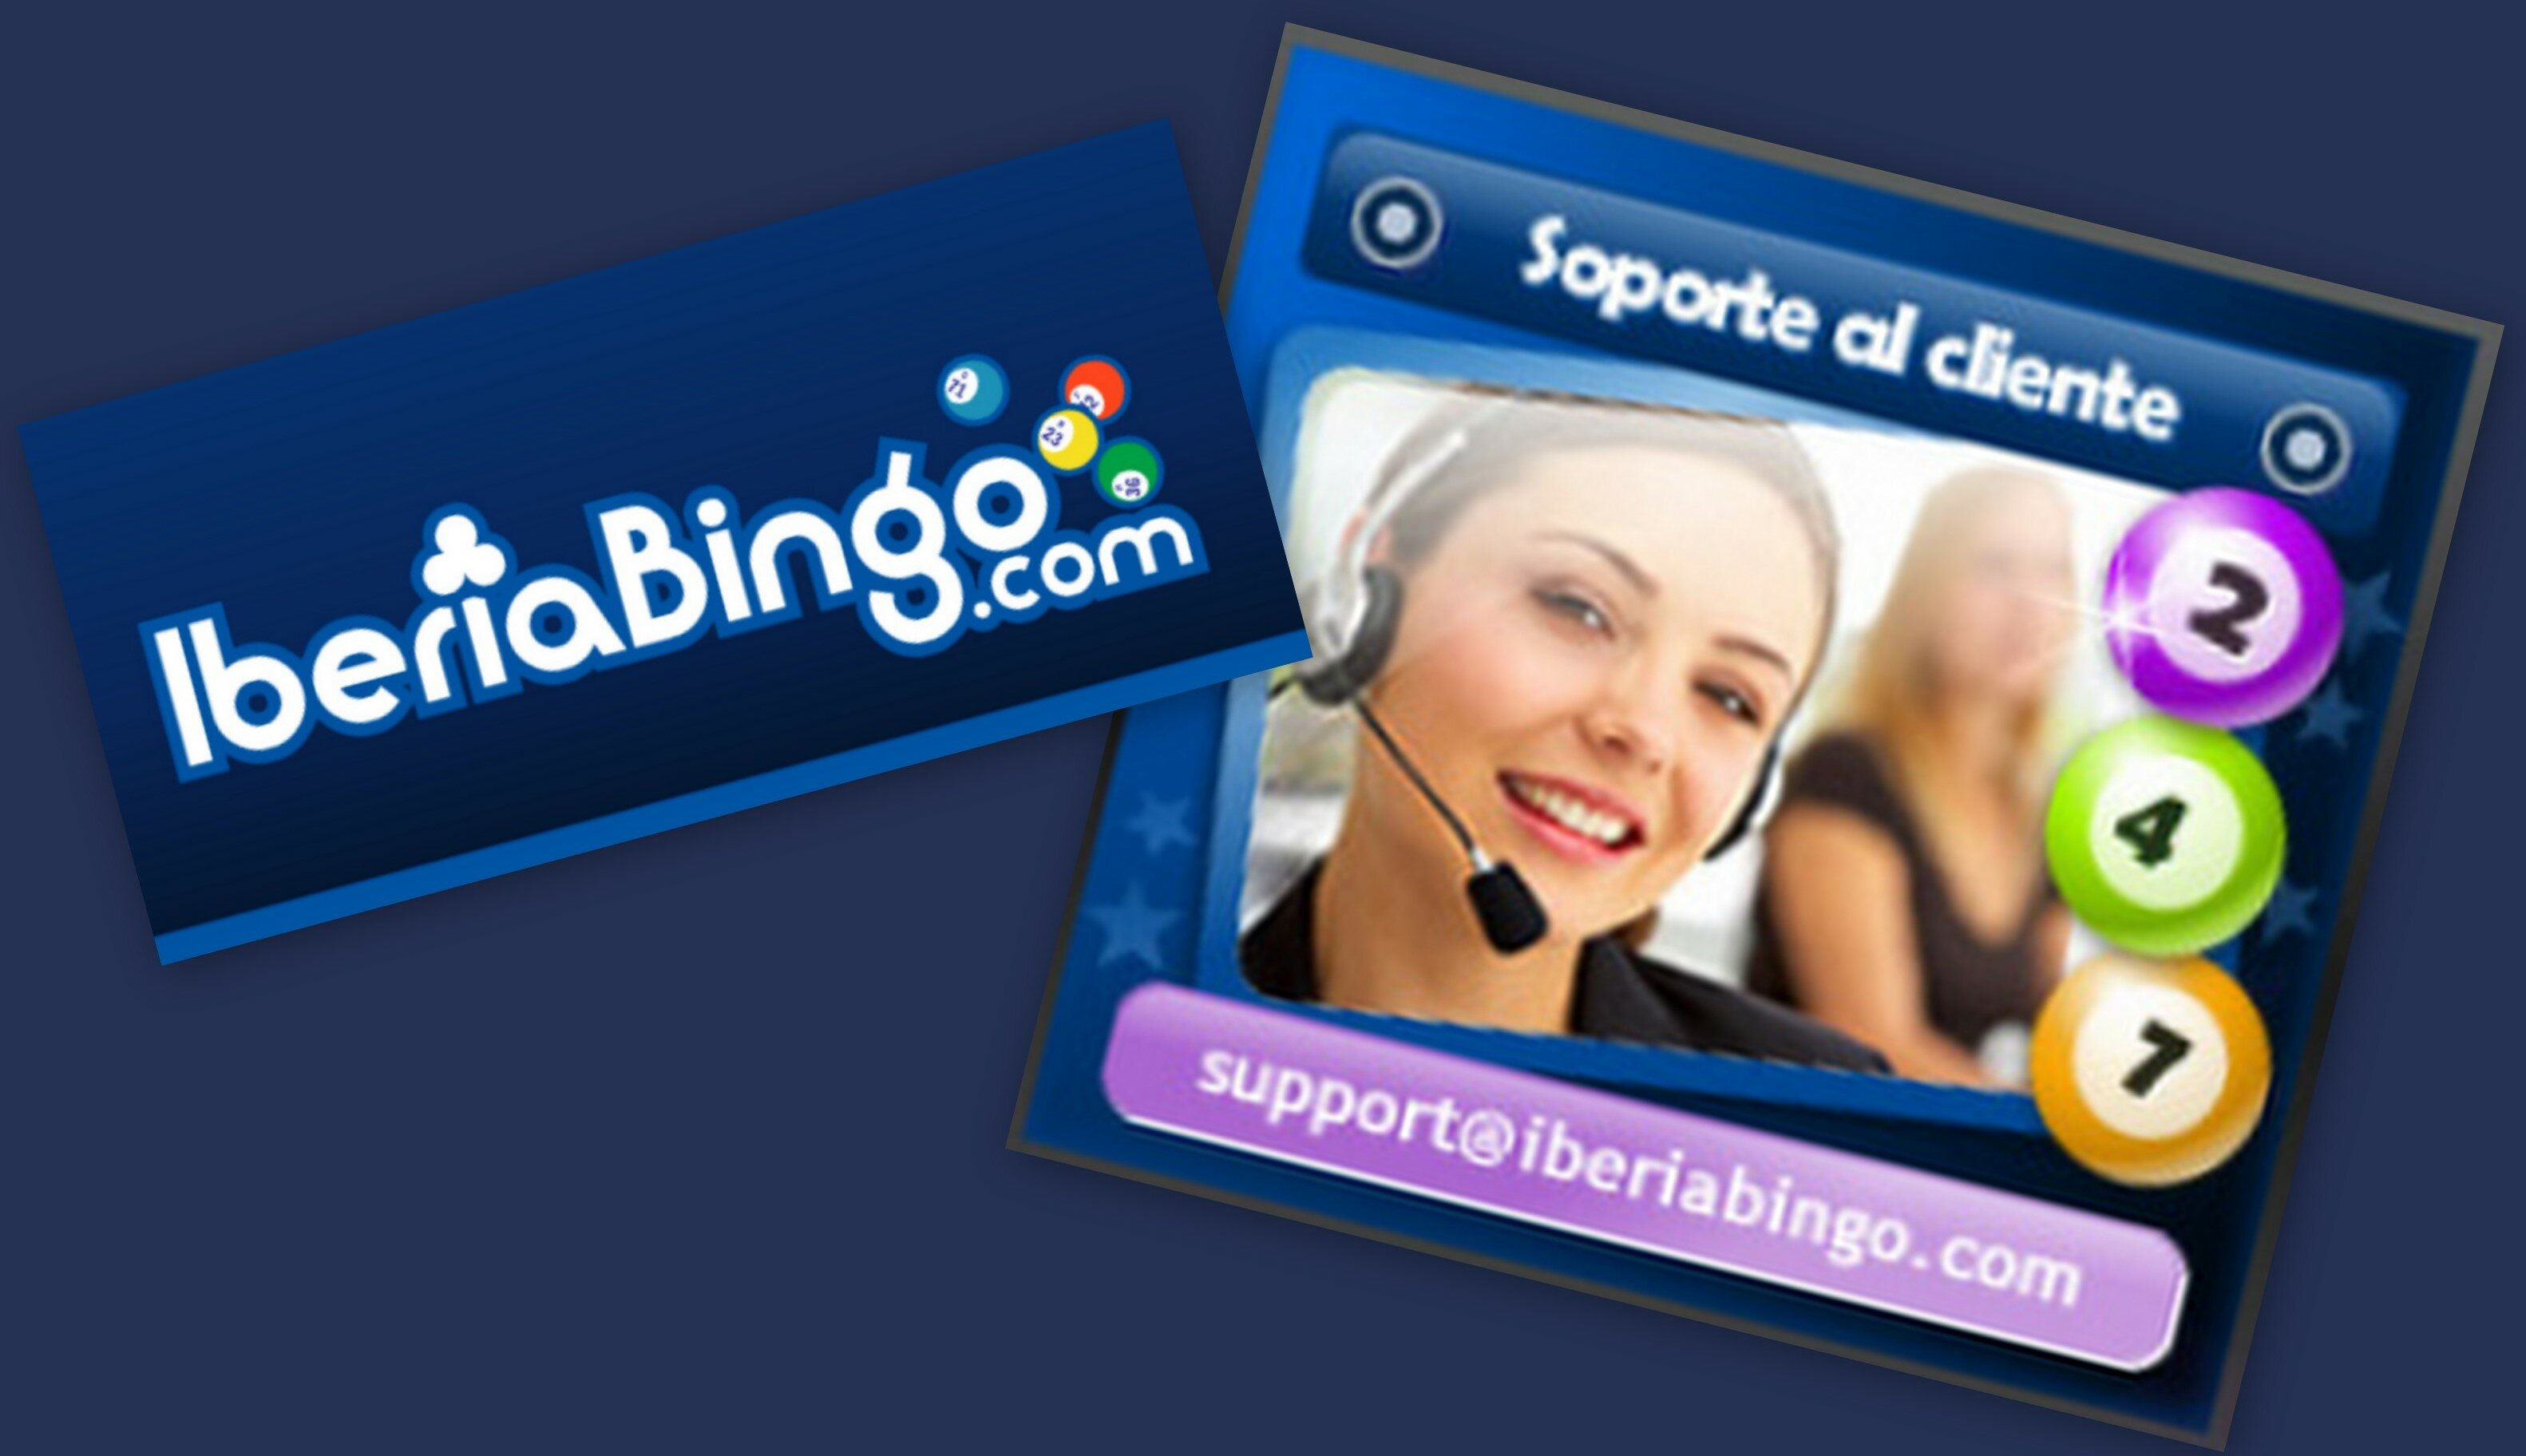 Soporte al cliente Iberia bingo5 Procedimiento para apertura de cuenta en IberiaBingo